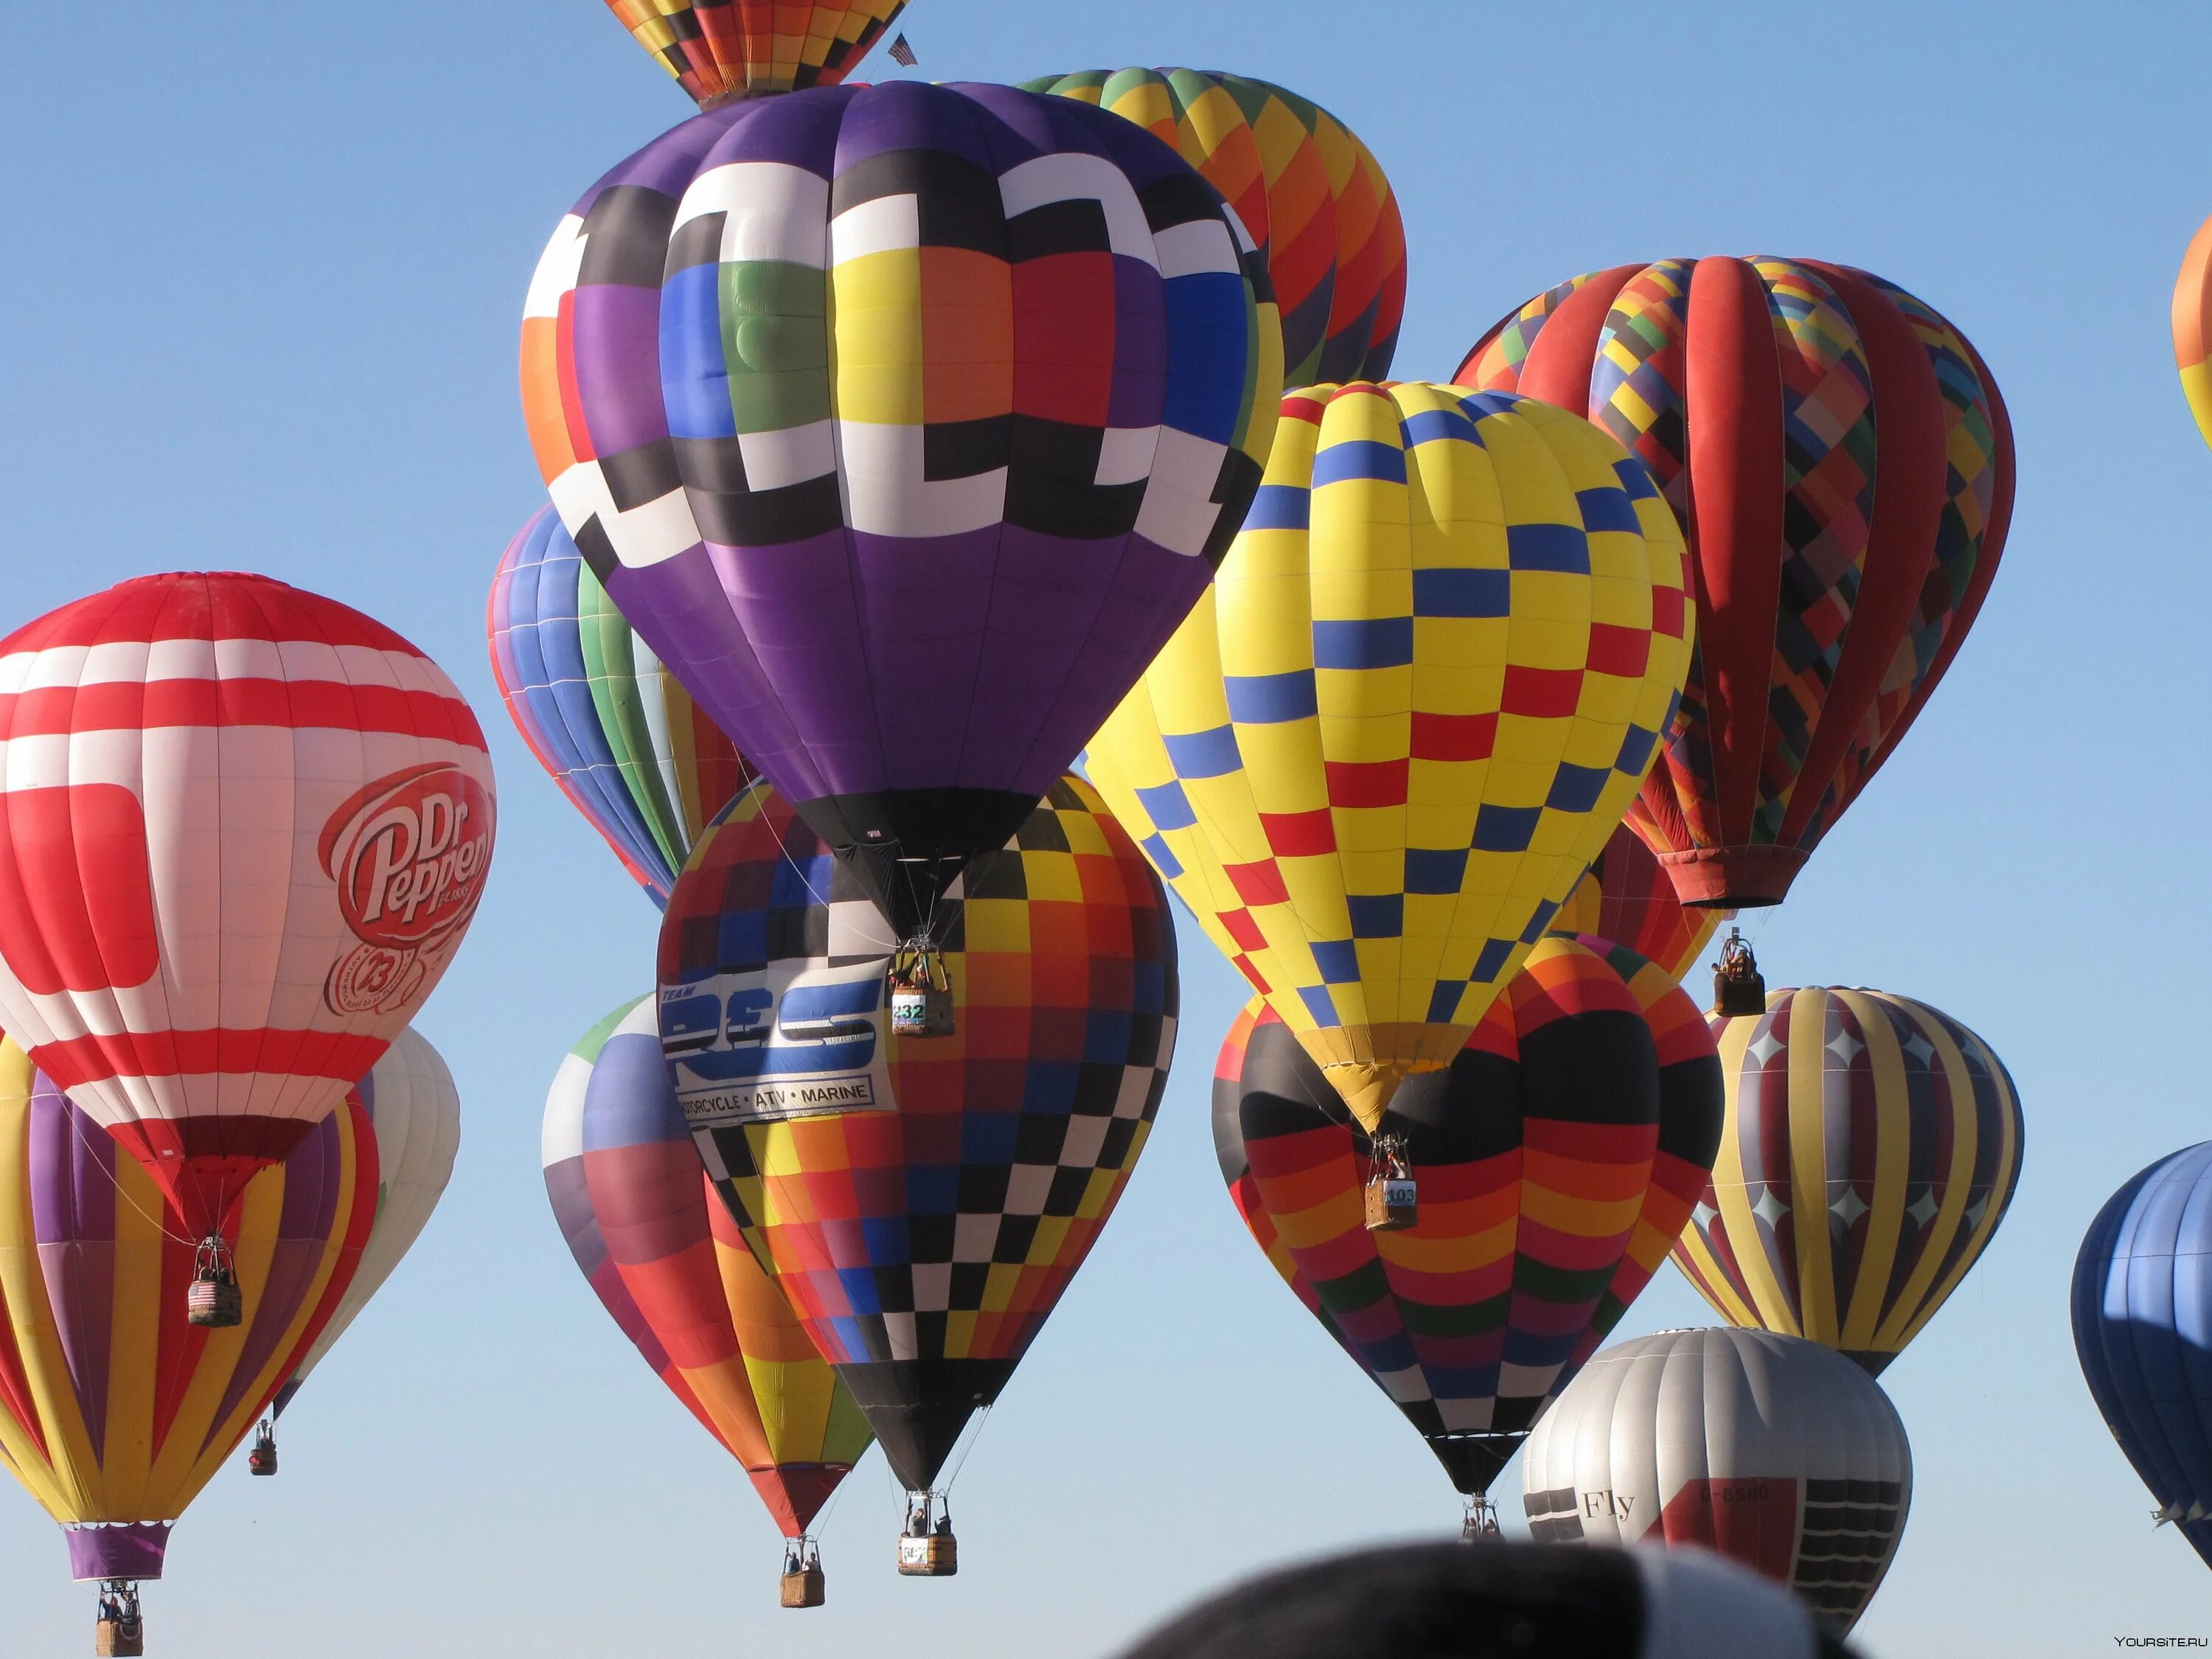 Интересный воздушный шар. Фестиваль воздушных шаров в Нью-Мексико. Albuquerque International Balloon Fiesta фестиваль. Альбукерке Международный воздушный шар Fiesta Нью-Мексико. Альбукерка фестиваль шаров.